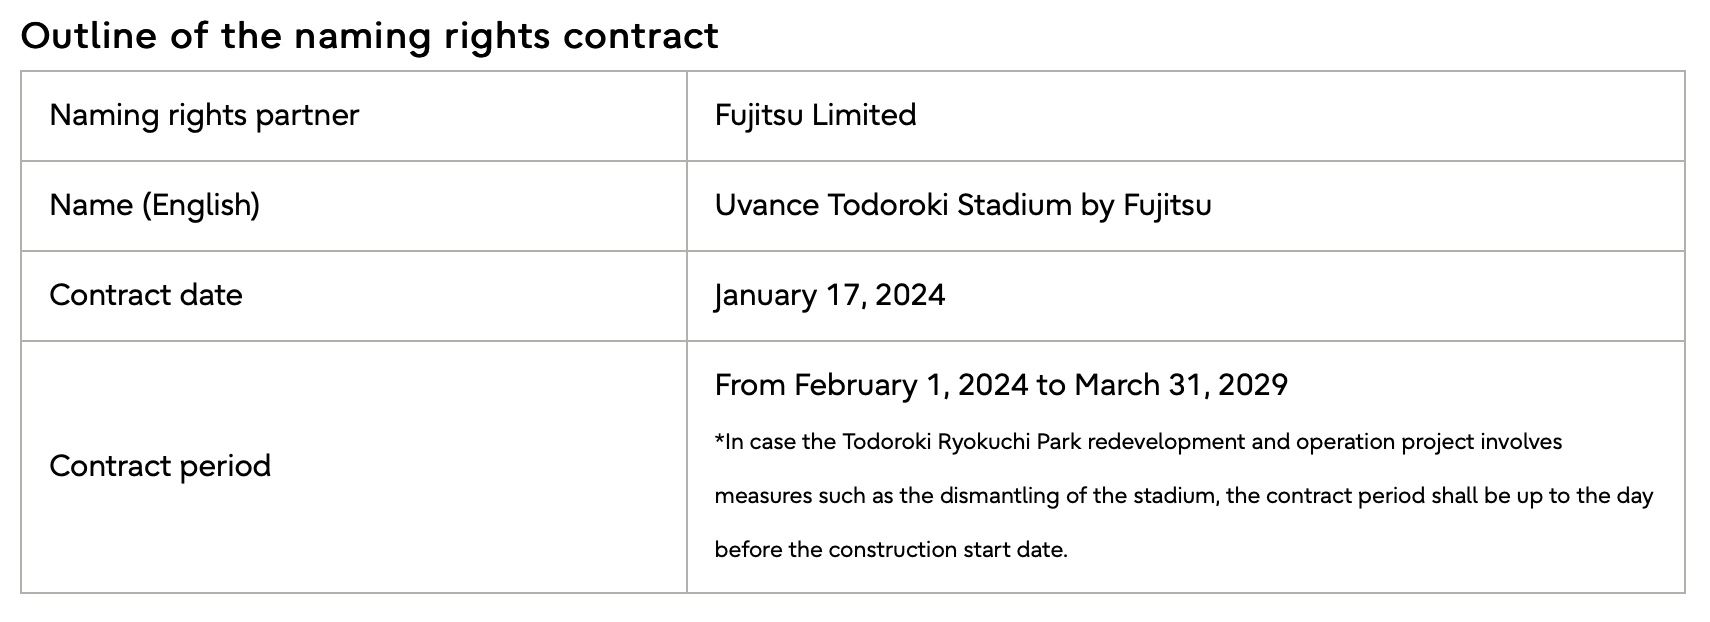 Fujitsu underskriver navneaftale for Todoroki Atletikstadion